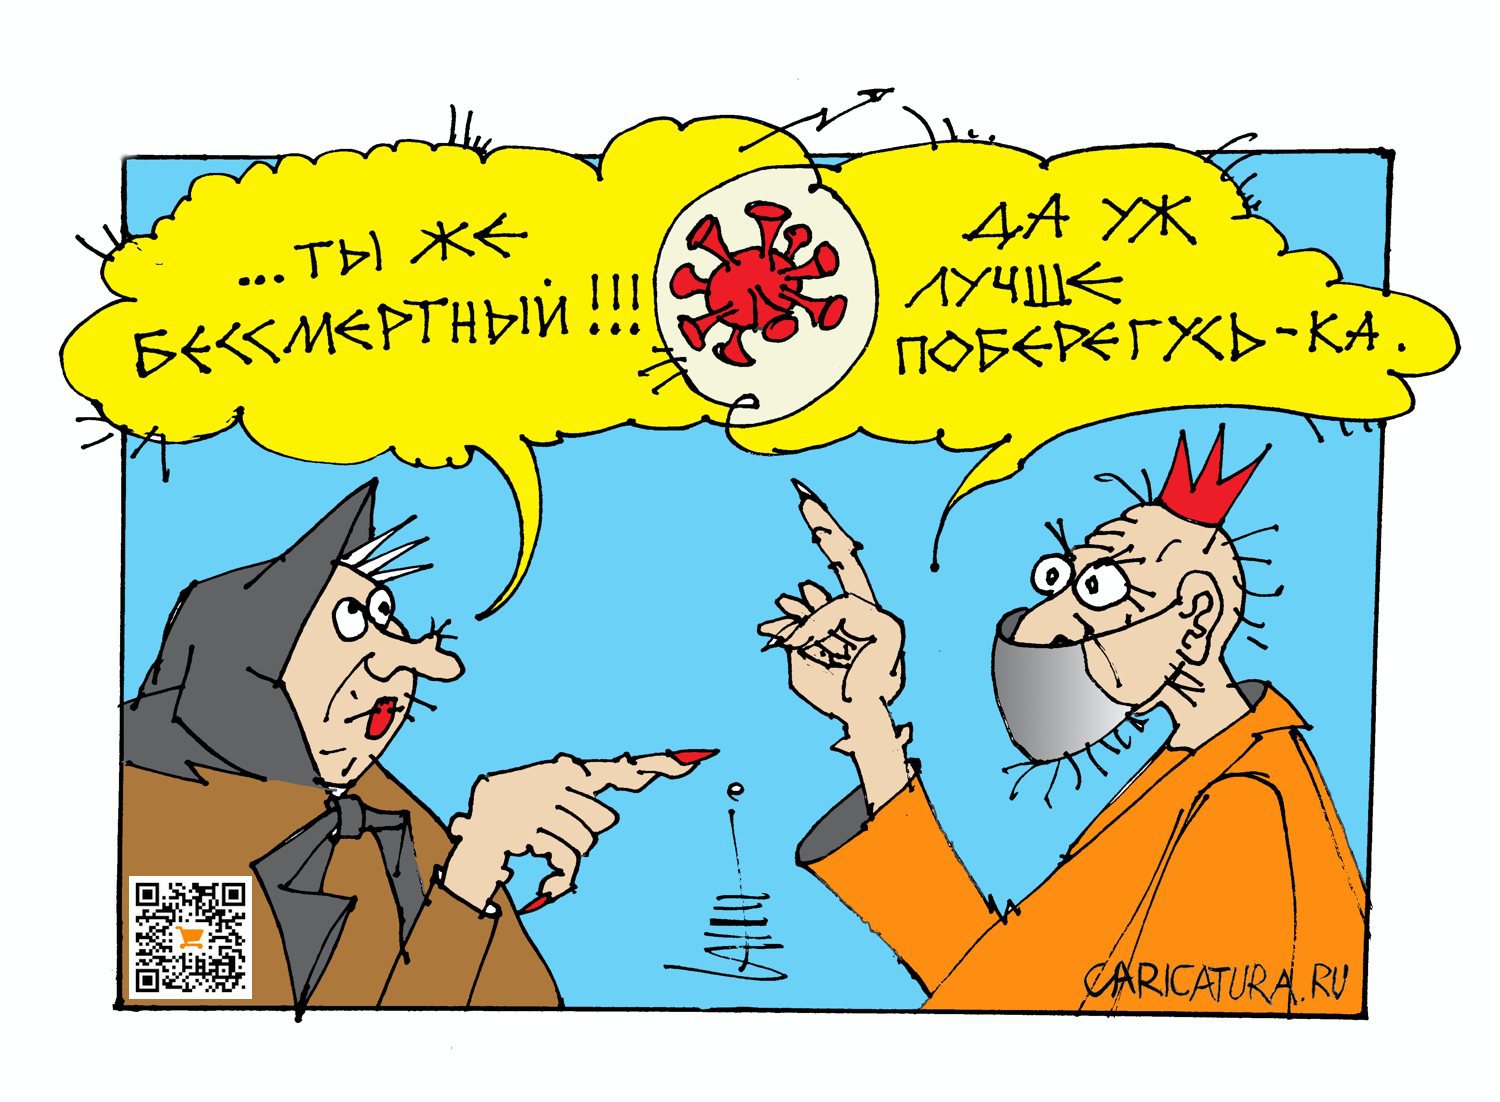 Карикатура "Кощеева подстраховка...", Юрий Санников